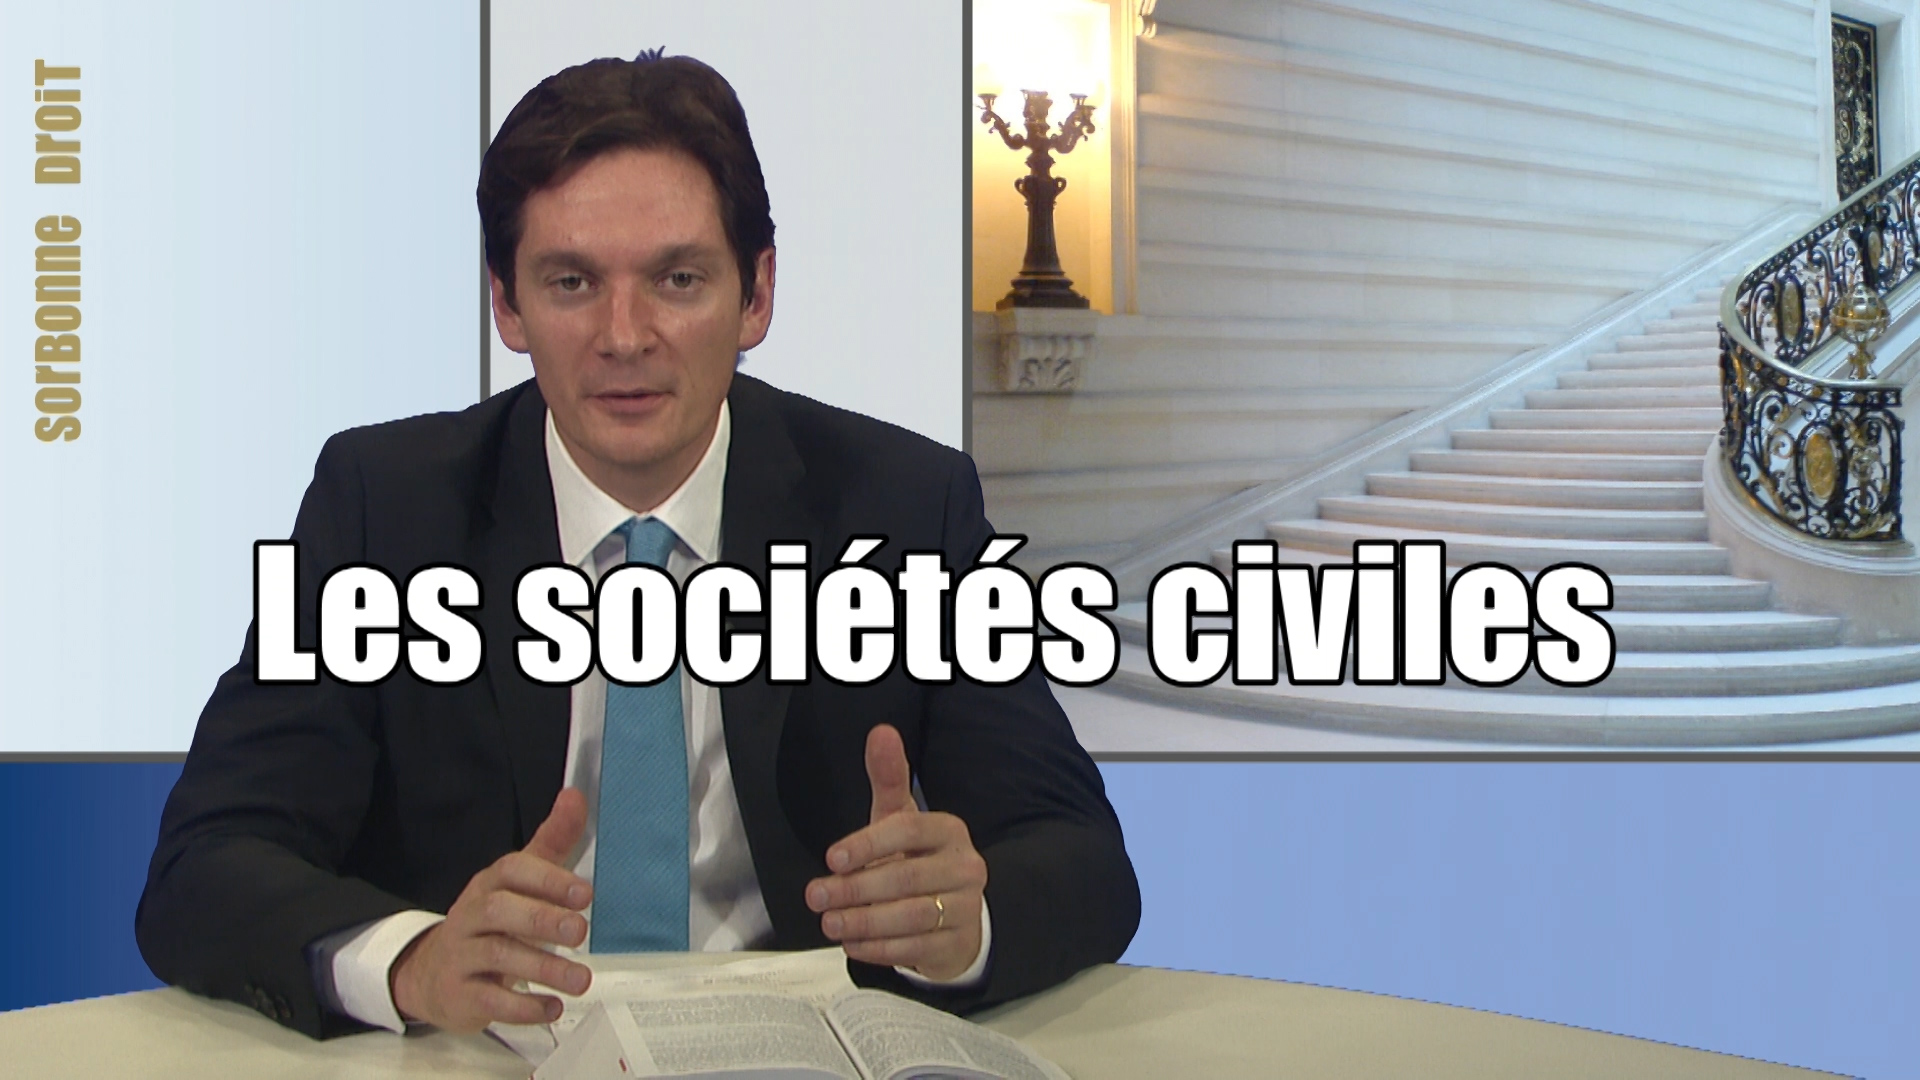 Les sociétés civiles